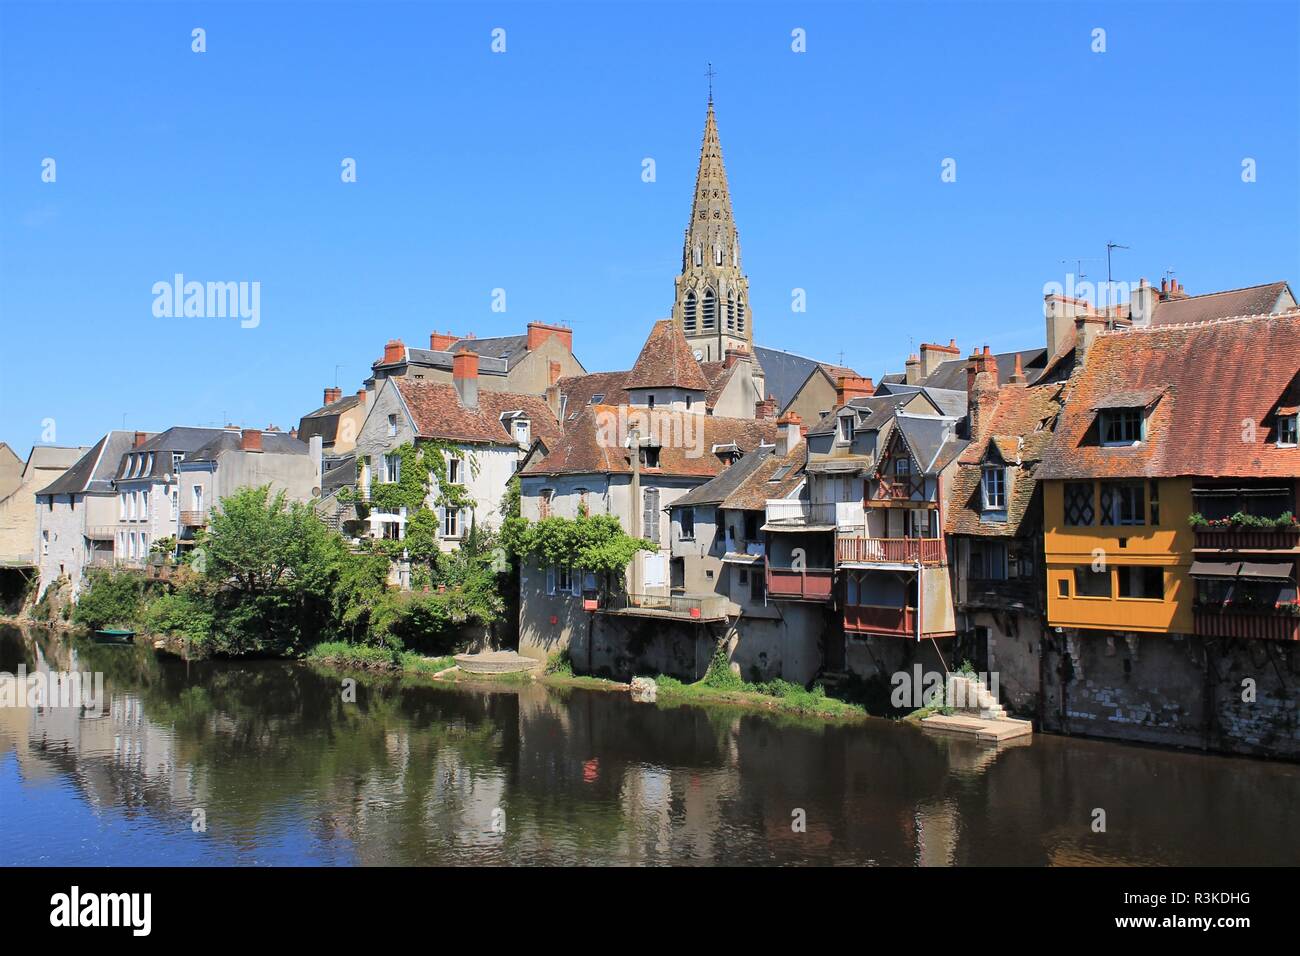 Historische Stadt Argenton sur Creuse Genannt das Venedig von Berry, Region Berry-Indre, Frankreich Stockfoto